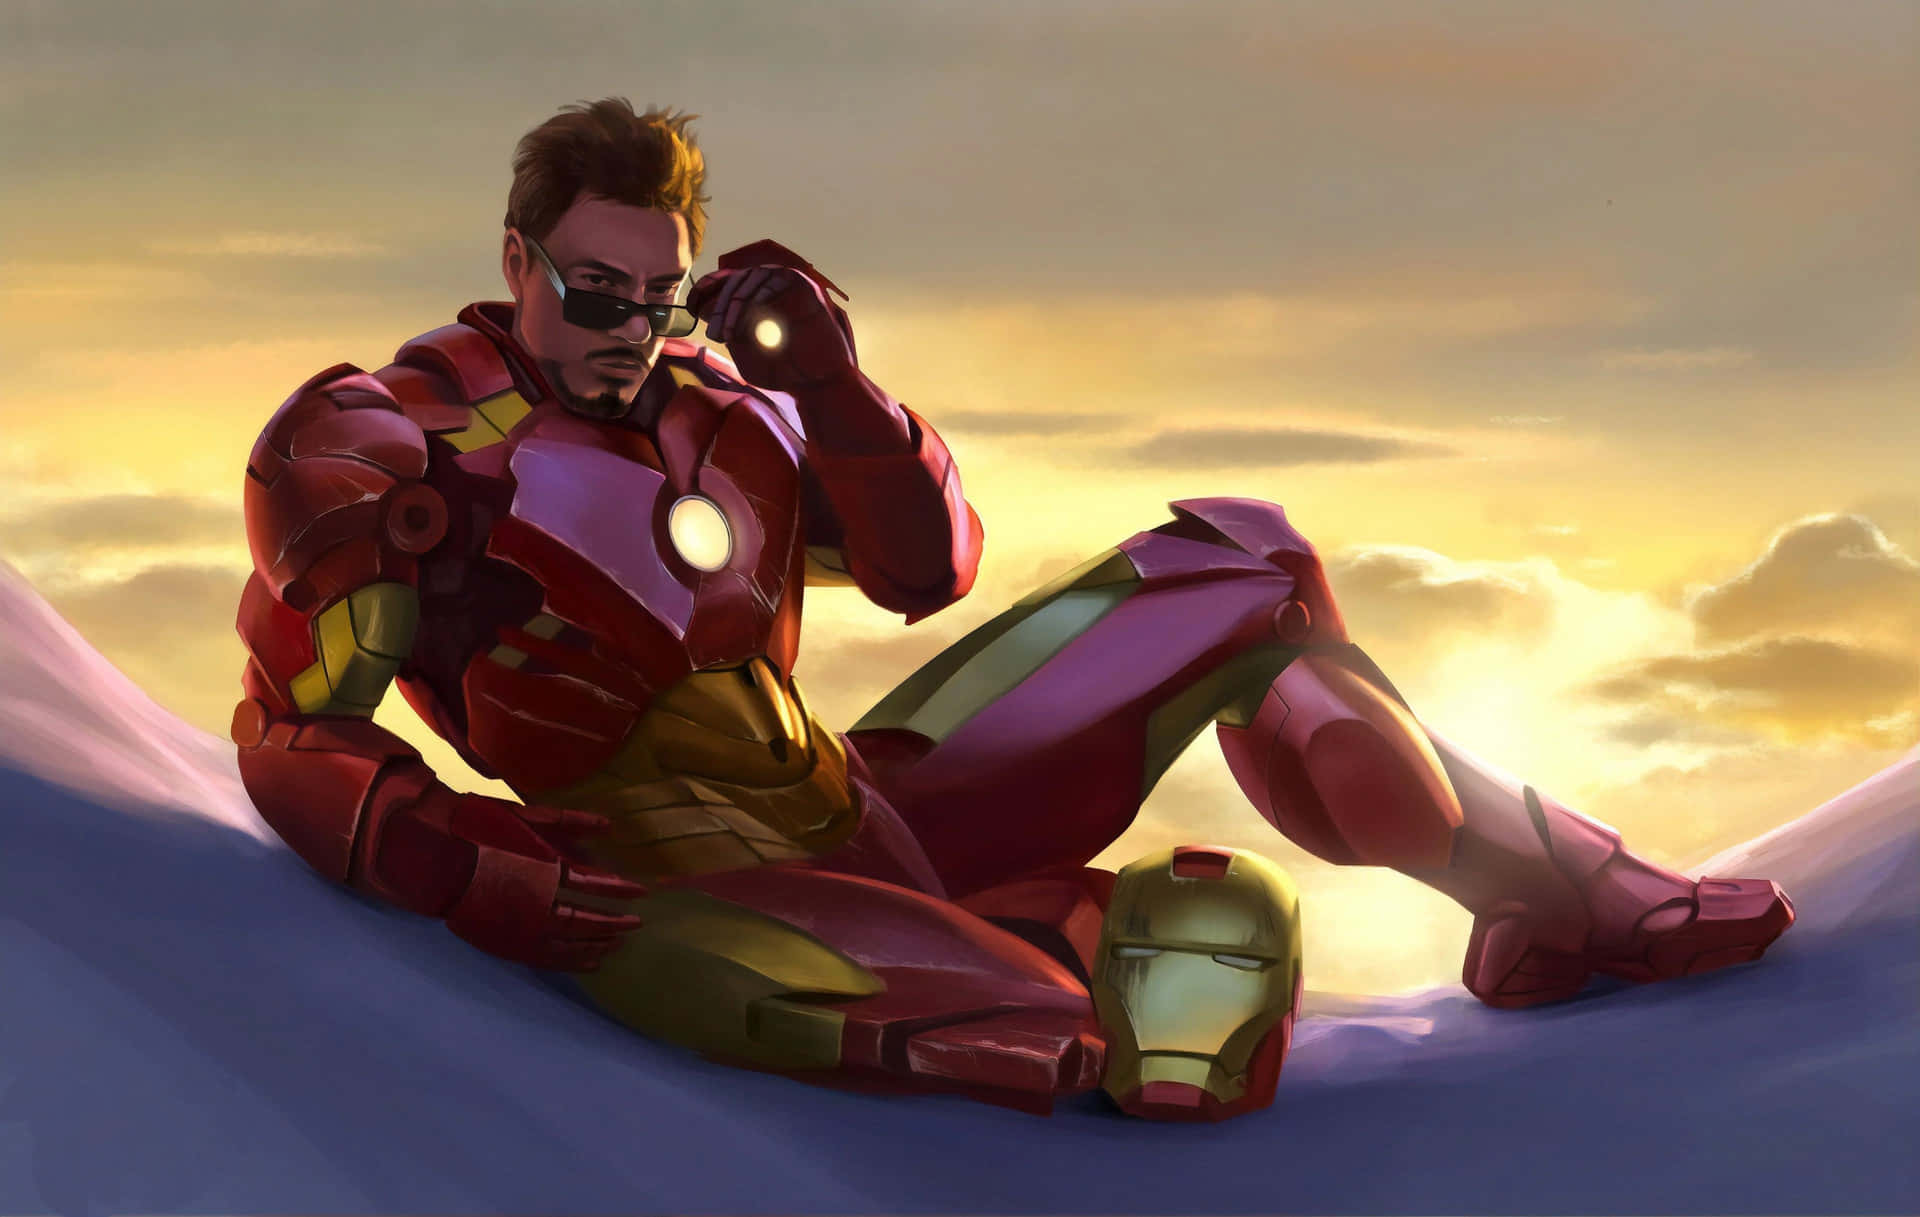 Iron Man Sunset Contemplation Wallpaper